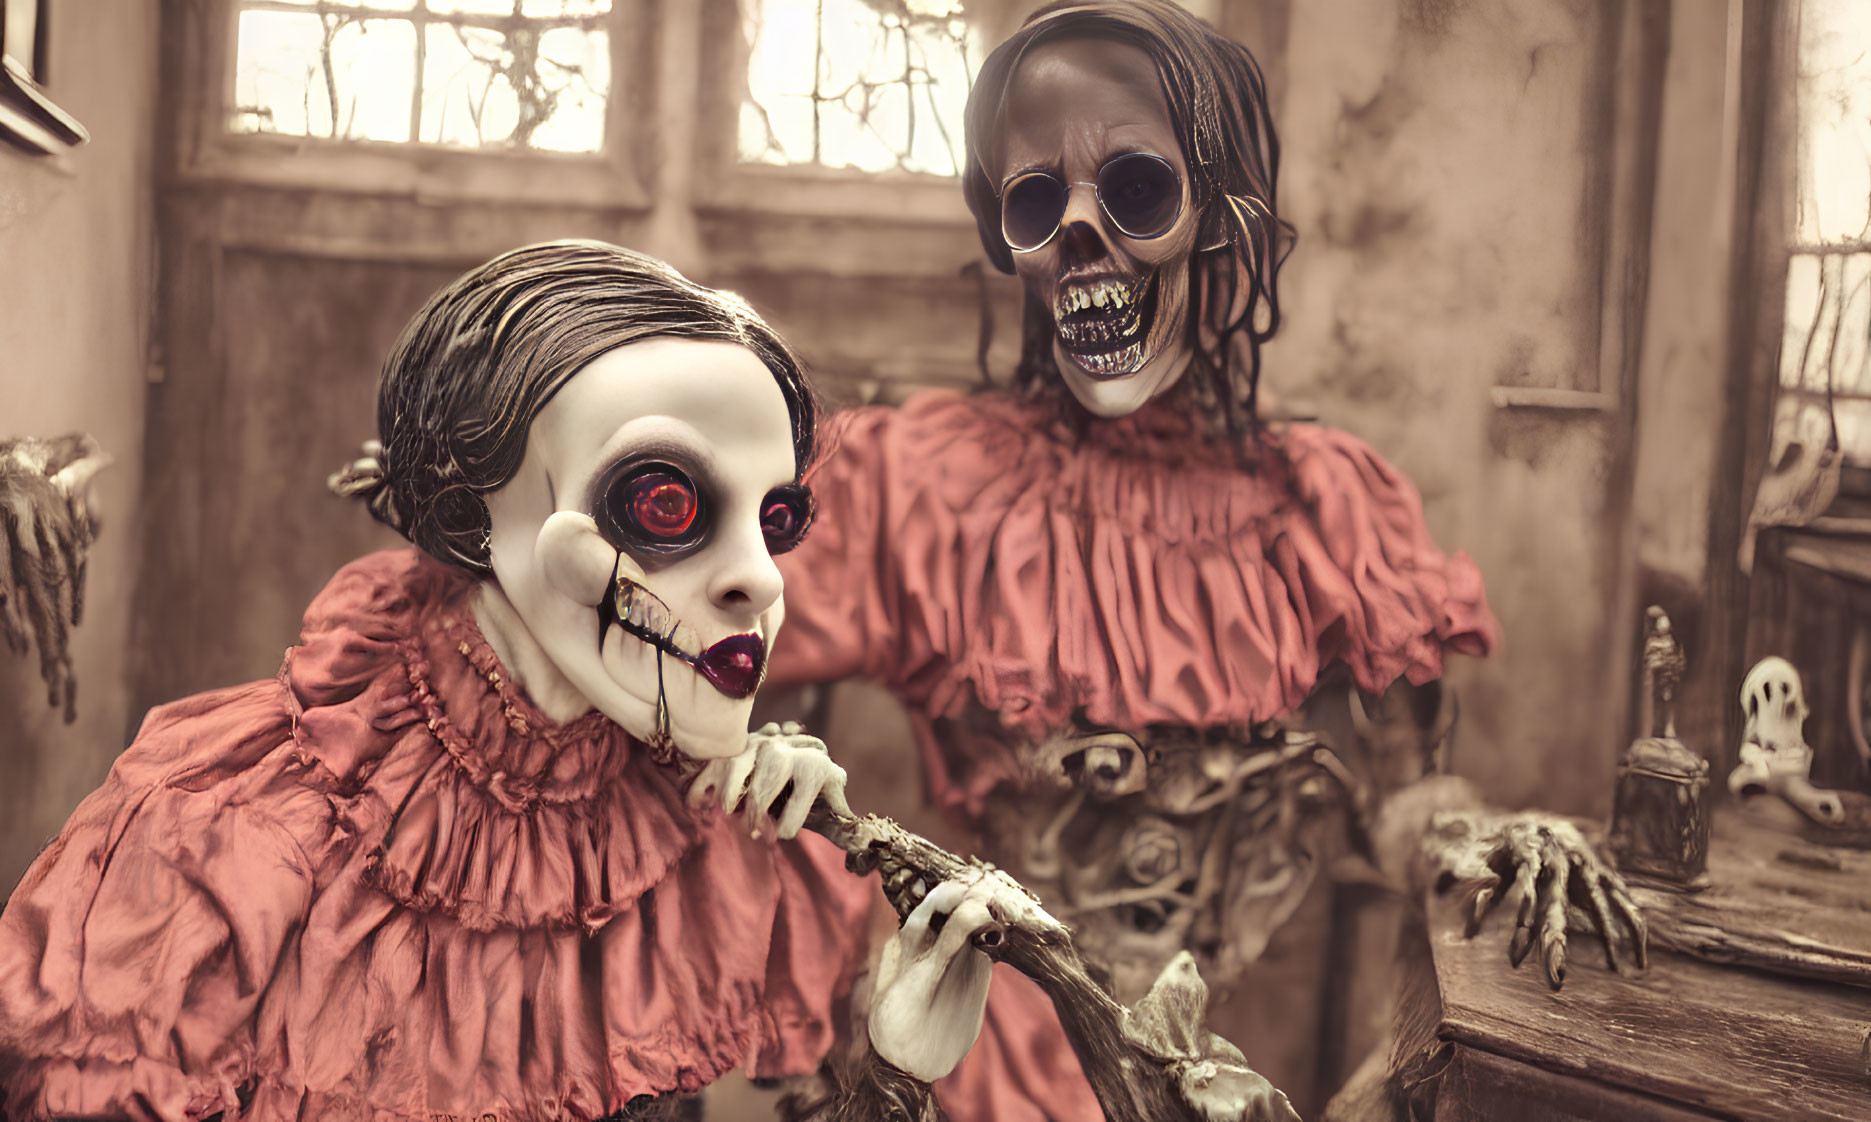 Eerie doll costumes in misty bone-filled scene